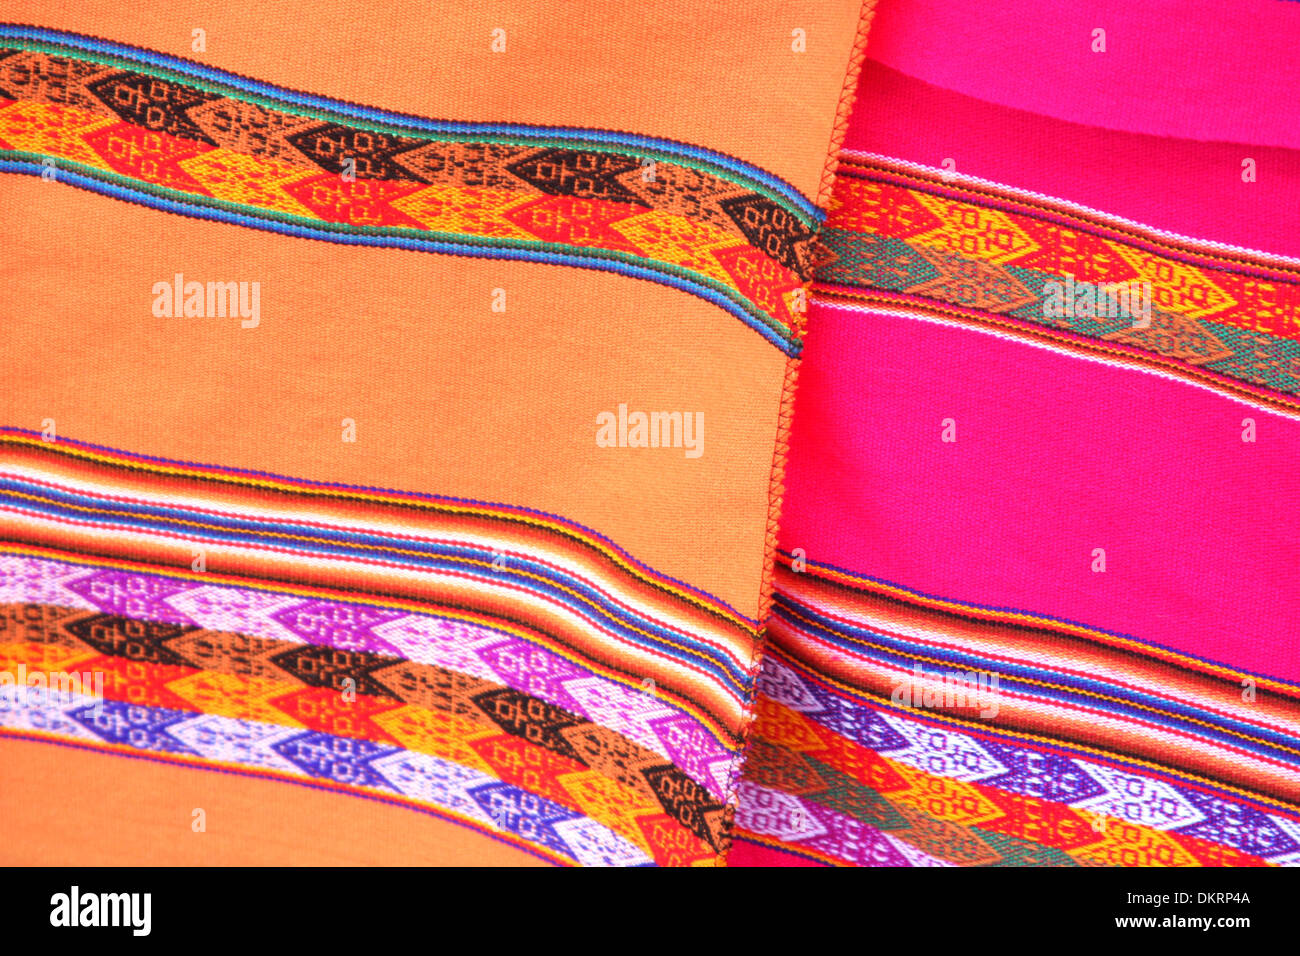 Fait à la main d'Amérique du Sud en tissu coloré avec les schémas traditionnels et design, Lima, Pérou. Banque D'Images